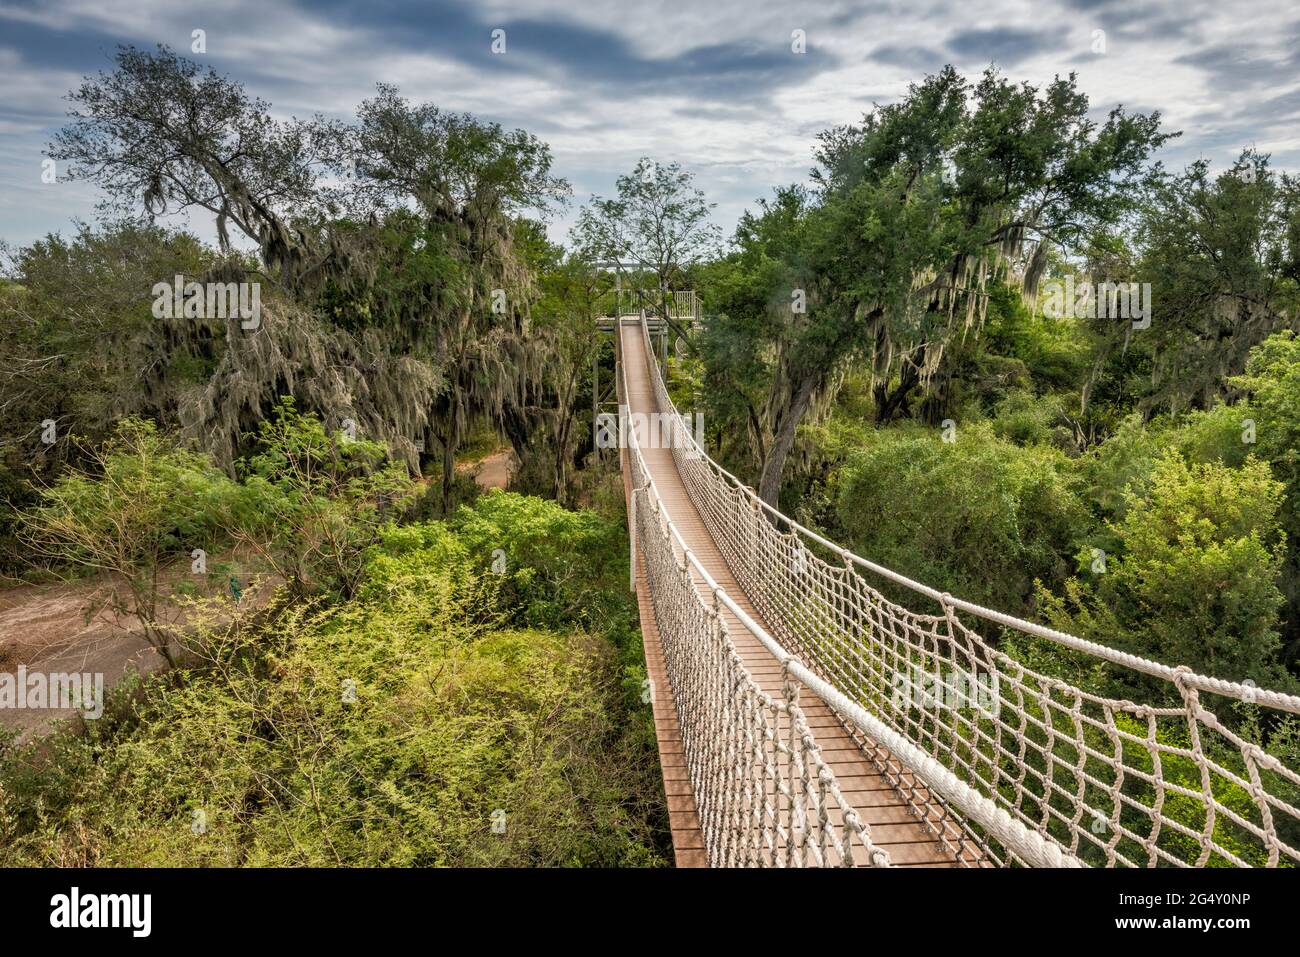 Canopy Bridge Fussgangerhangebrucke Uber Subtropische Walder Im Santa Ana National Wildlife Refuge In Der Nahe Von Pharr Texas Usa Stockfotografie Alamy